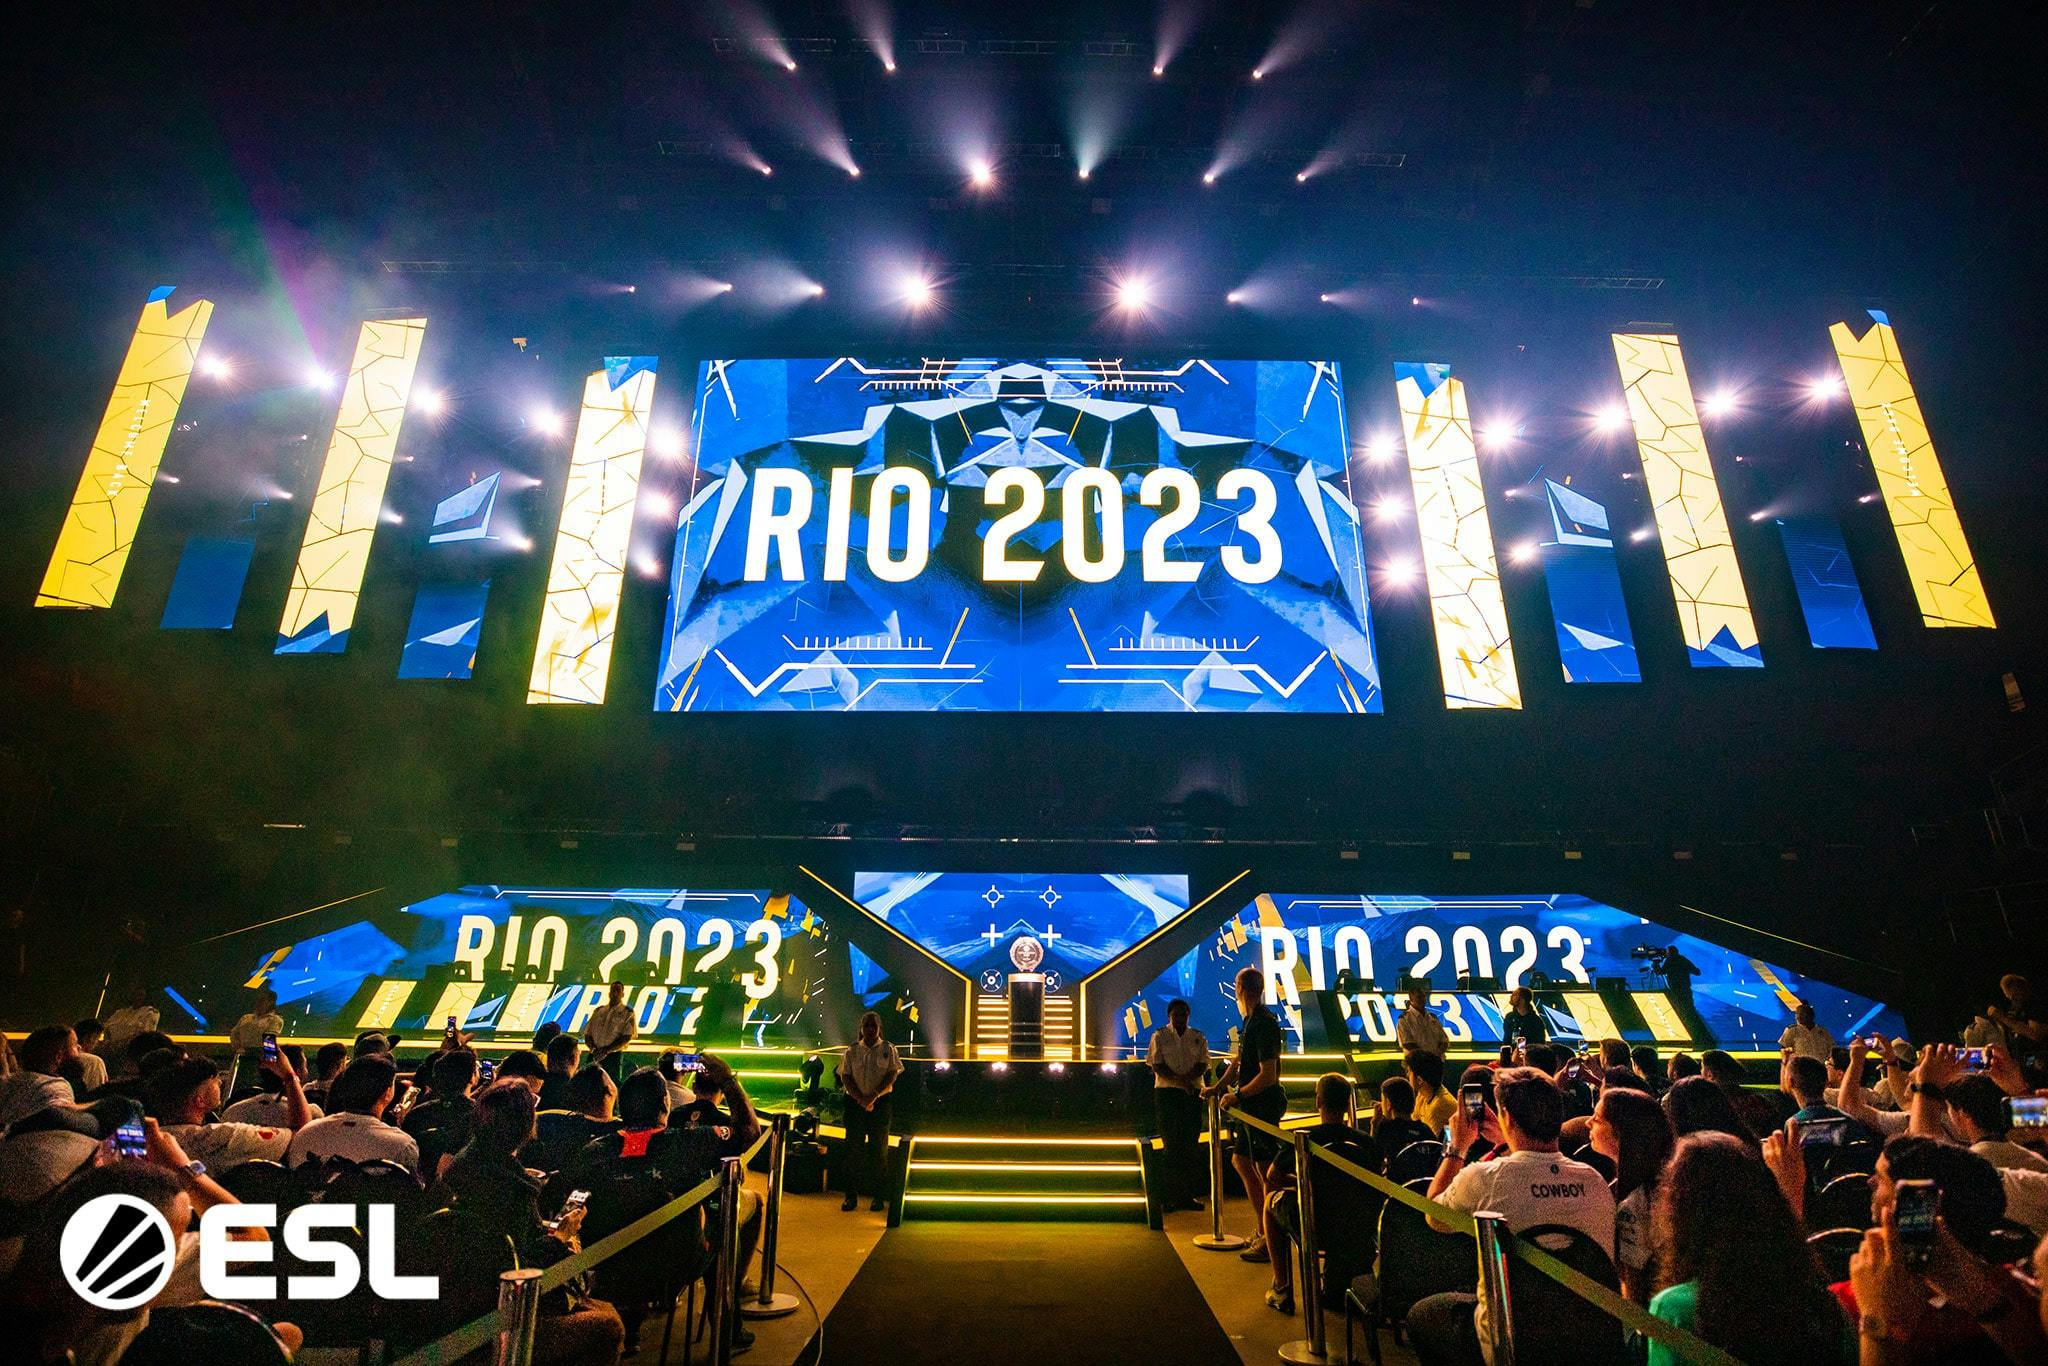 Team Brazil vs Team Sweden CS:GO IEM Rio Major 2022 Legends Clash - Invited  players, livestream details, and more